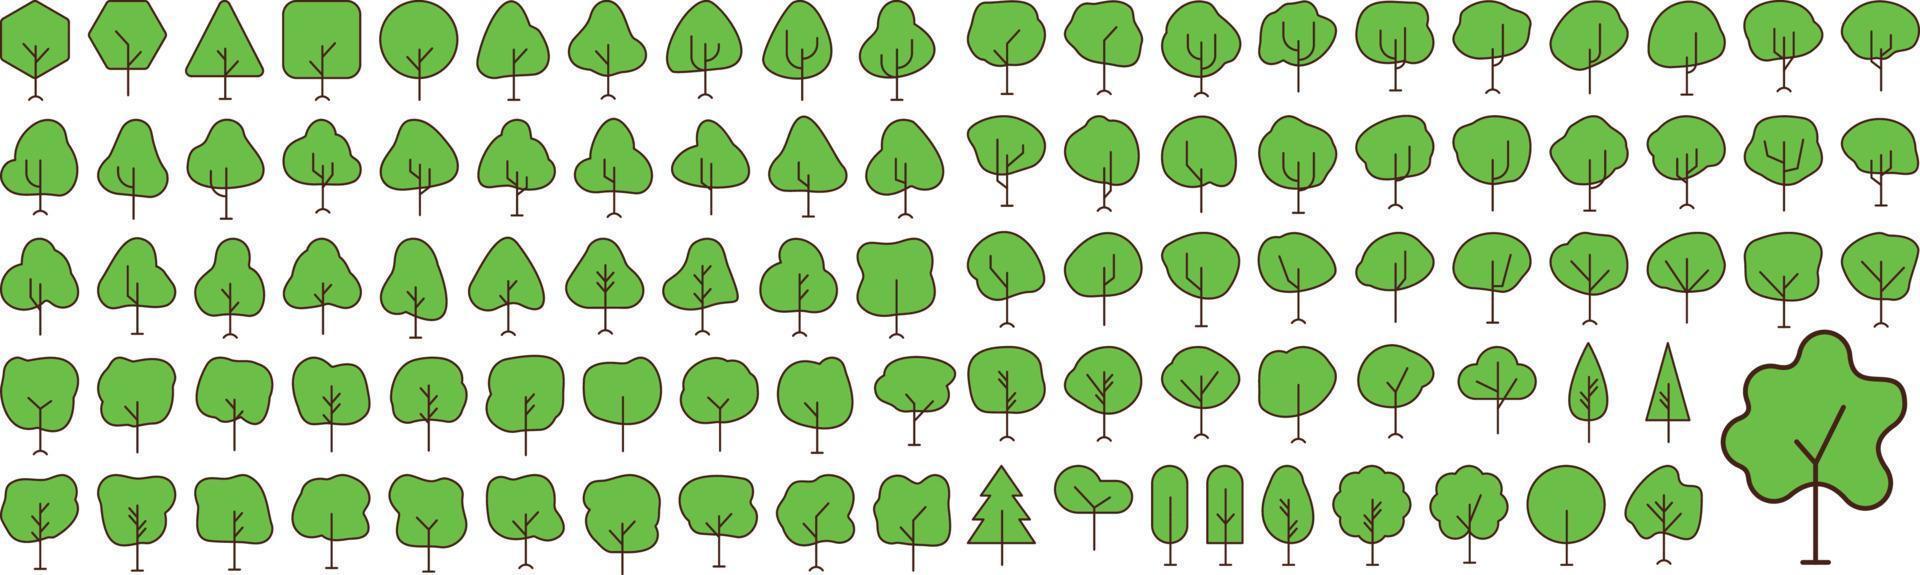 Vektor-flache Ikonen-Sammlung von Baum. Vektor flache Piktogramme isoliert auf weißem Hintergrund. Sammlung flacher Symbole für Web-Apps und mobiles Konzept. Premium-Qualitätssymbole